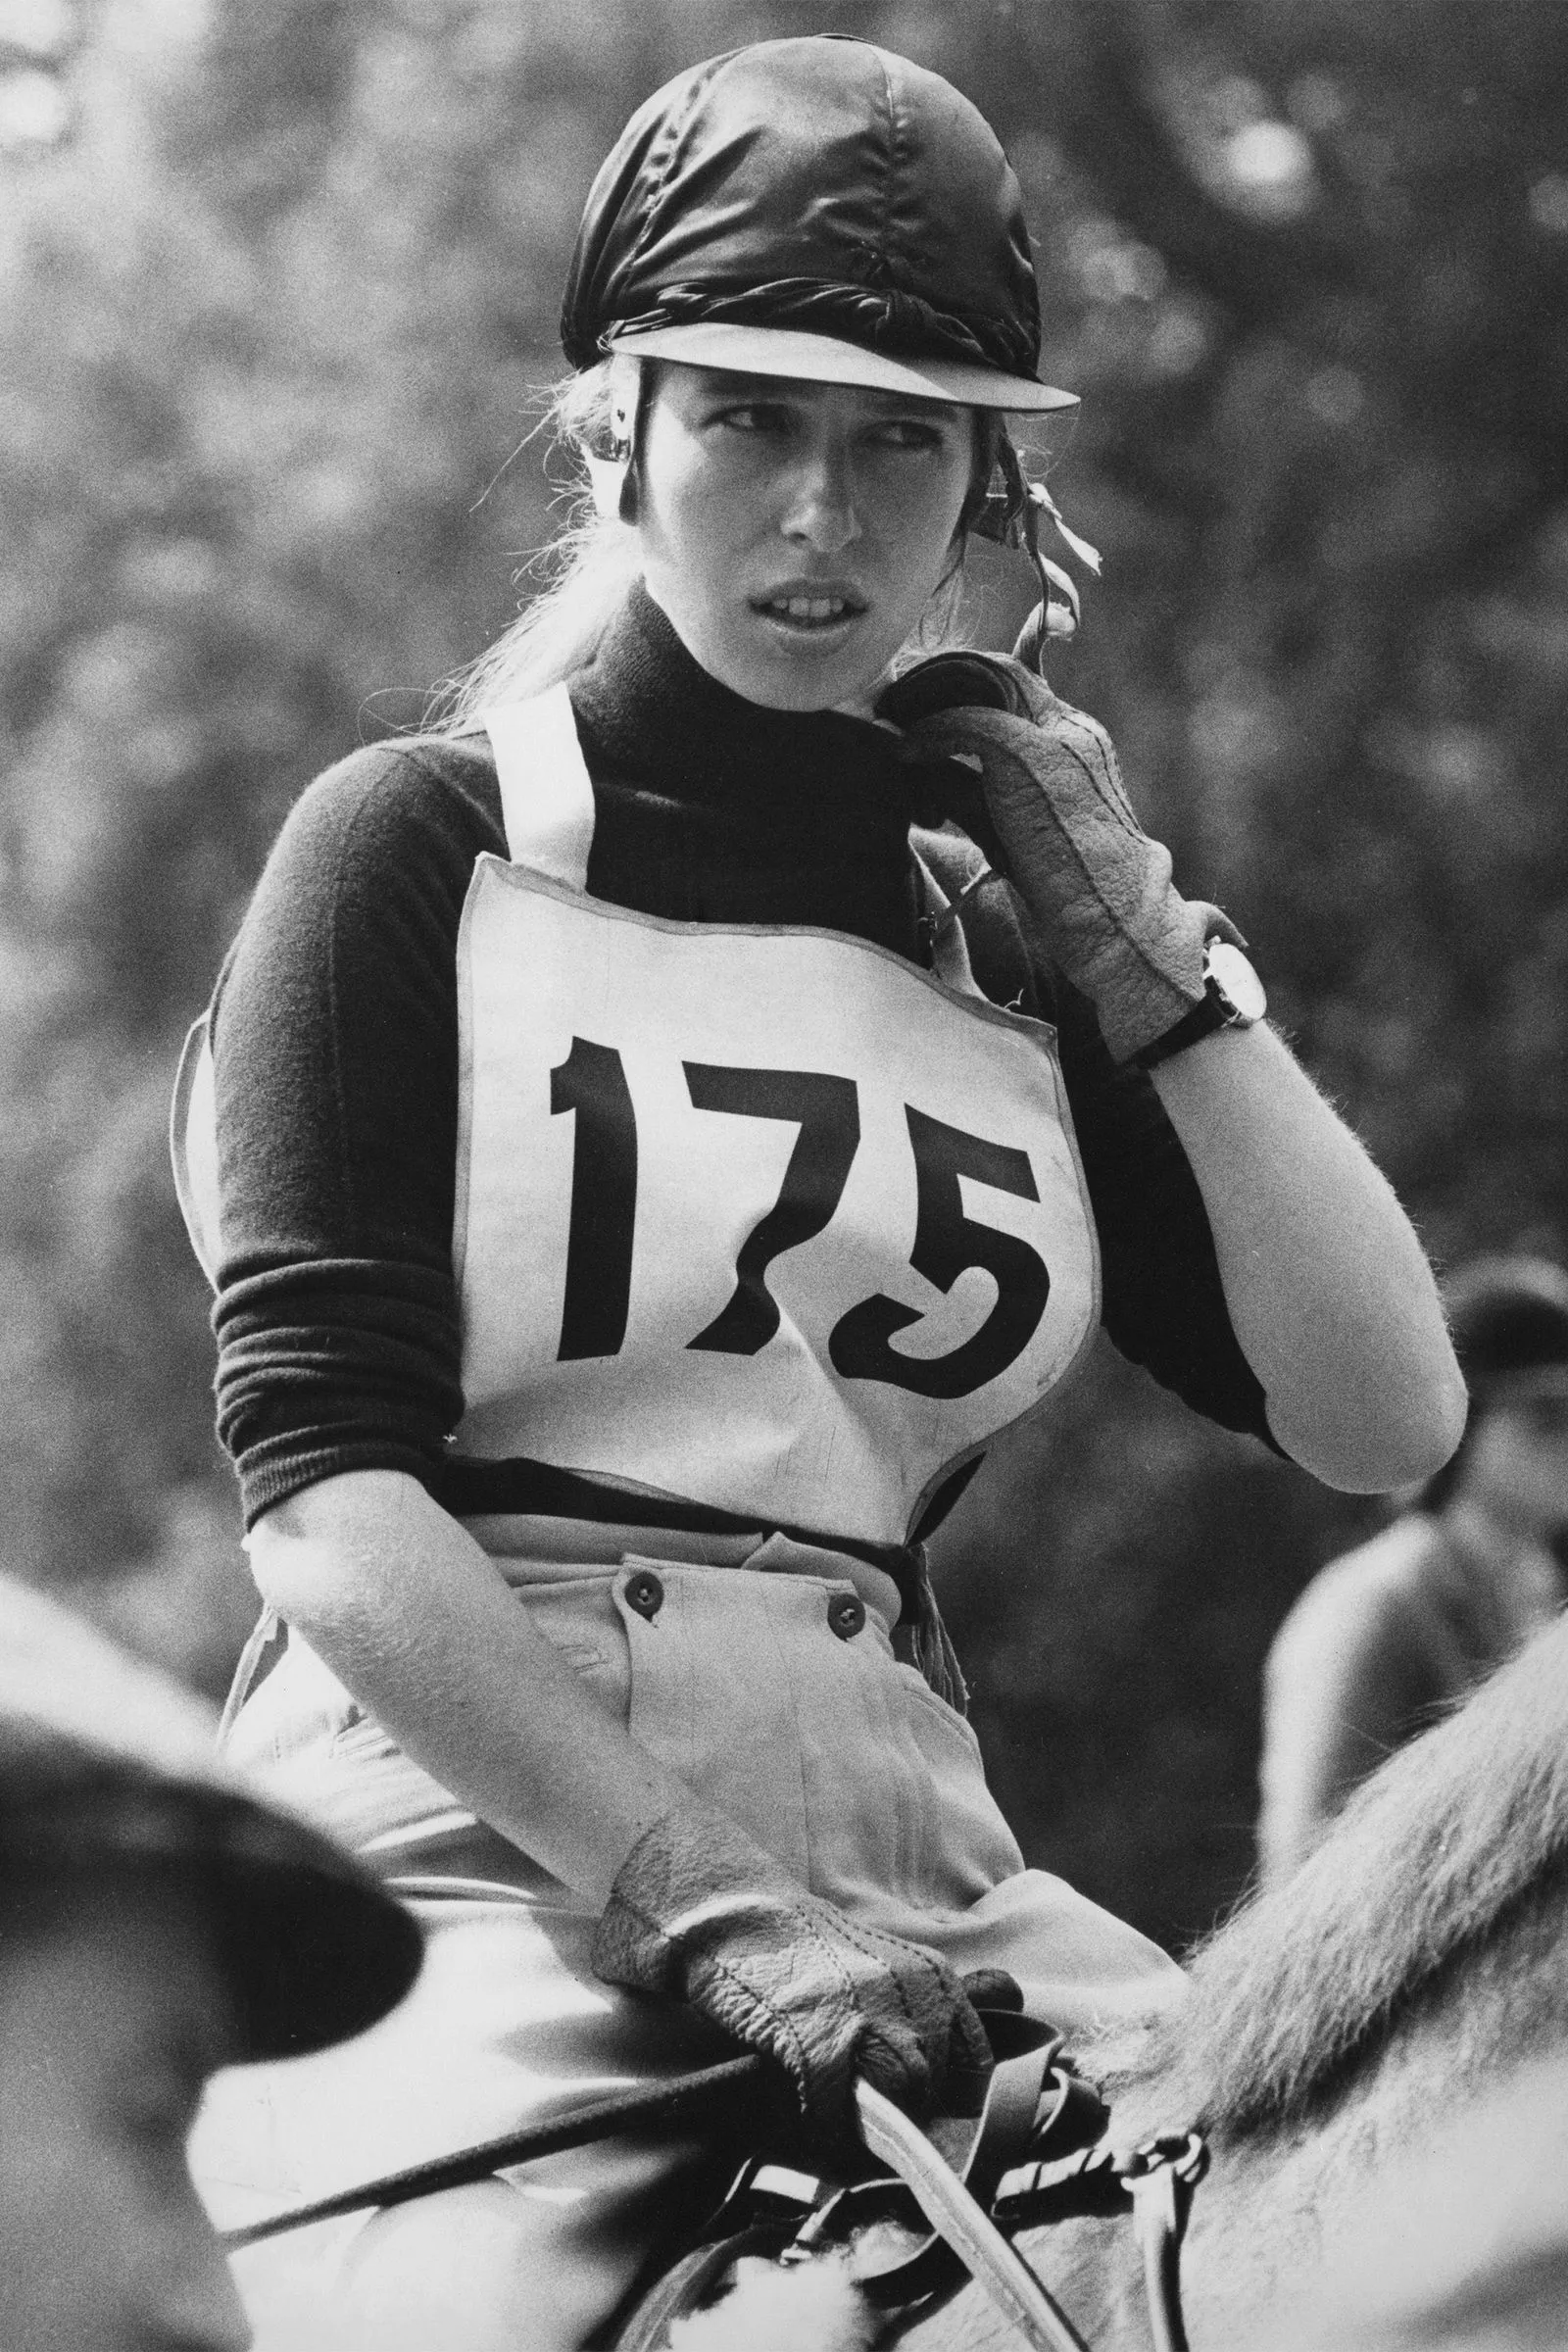 Анна, королевская принцесса, участвует в соревнованиях на скачках в Эридже, 21 августа 1971 г.